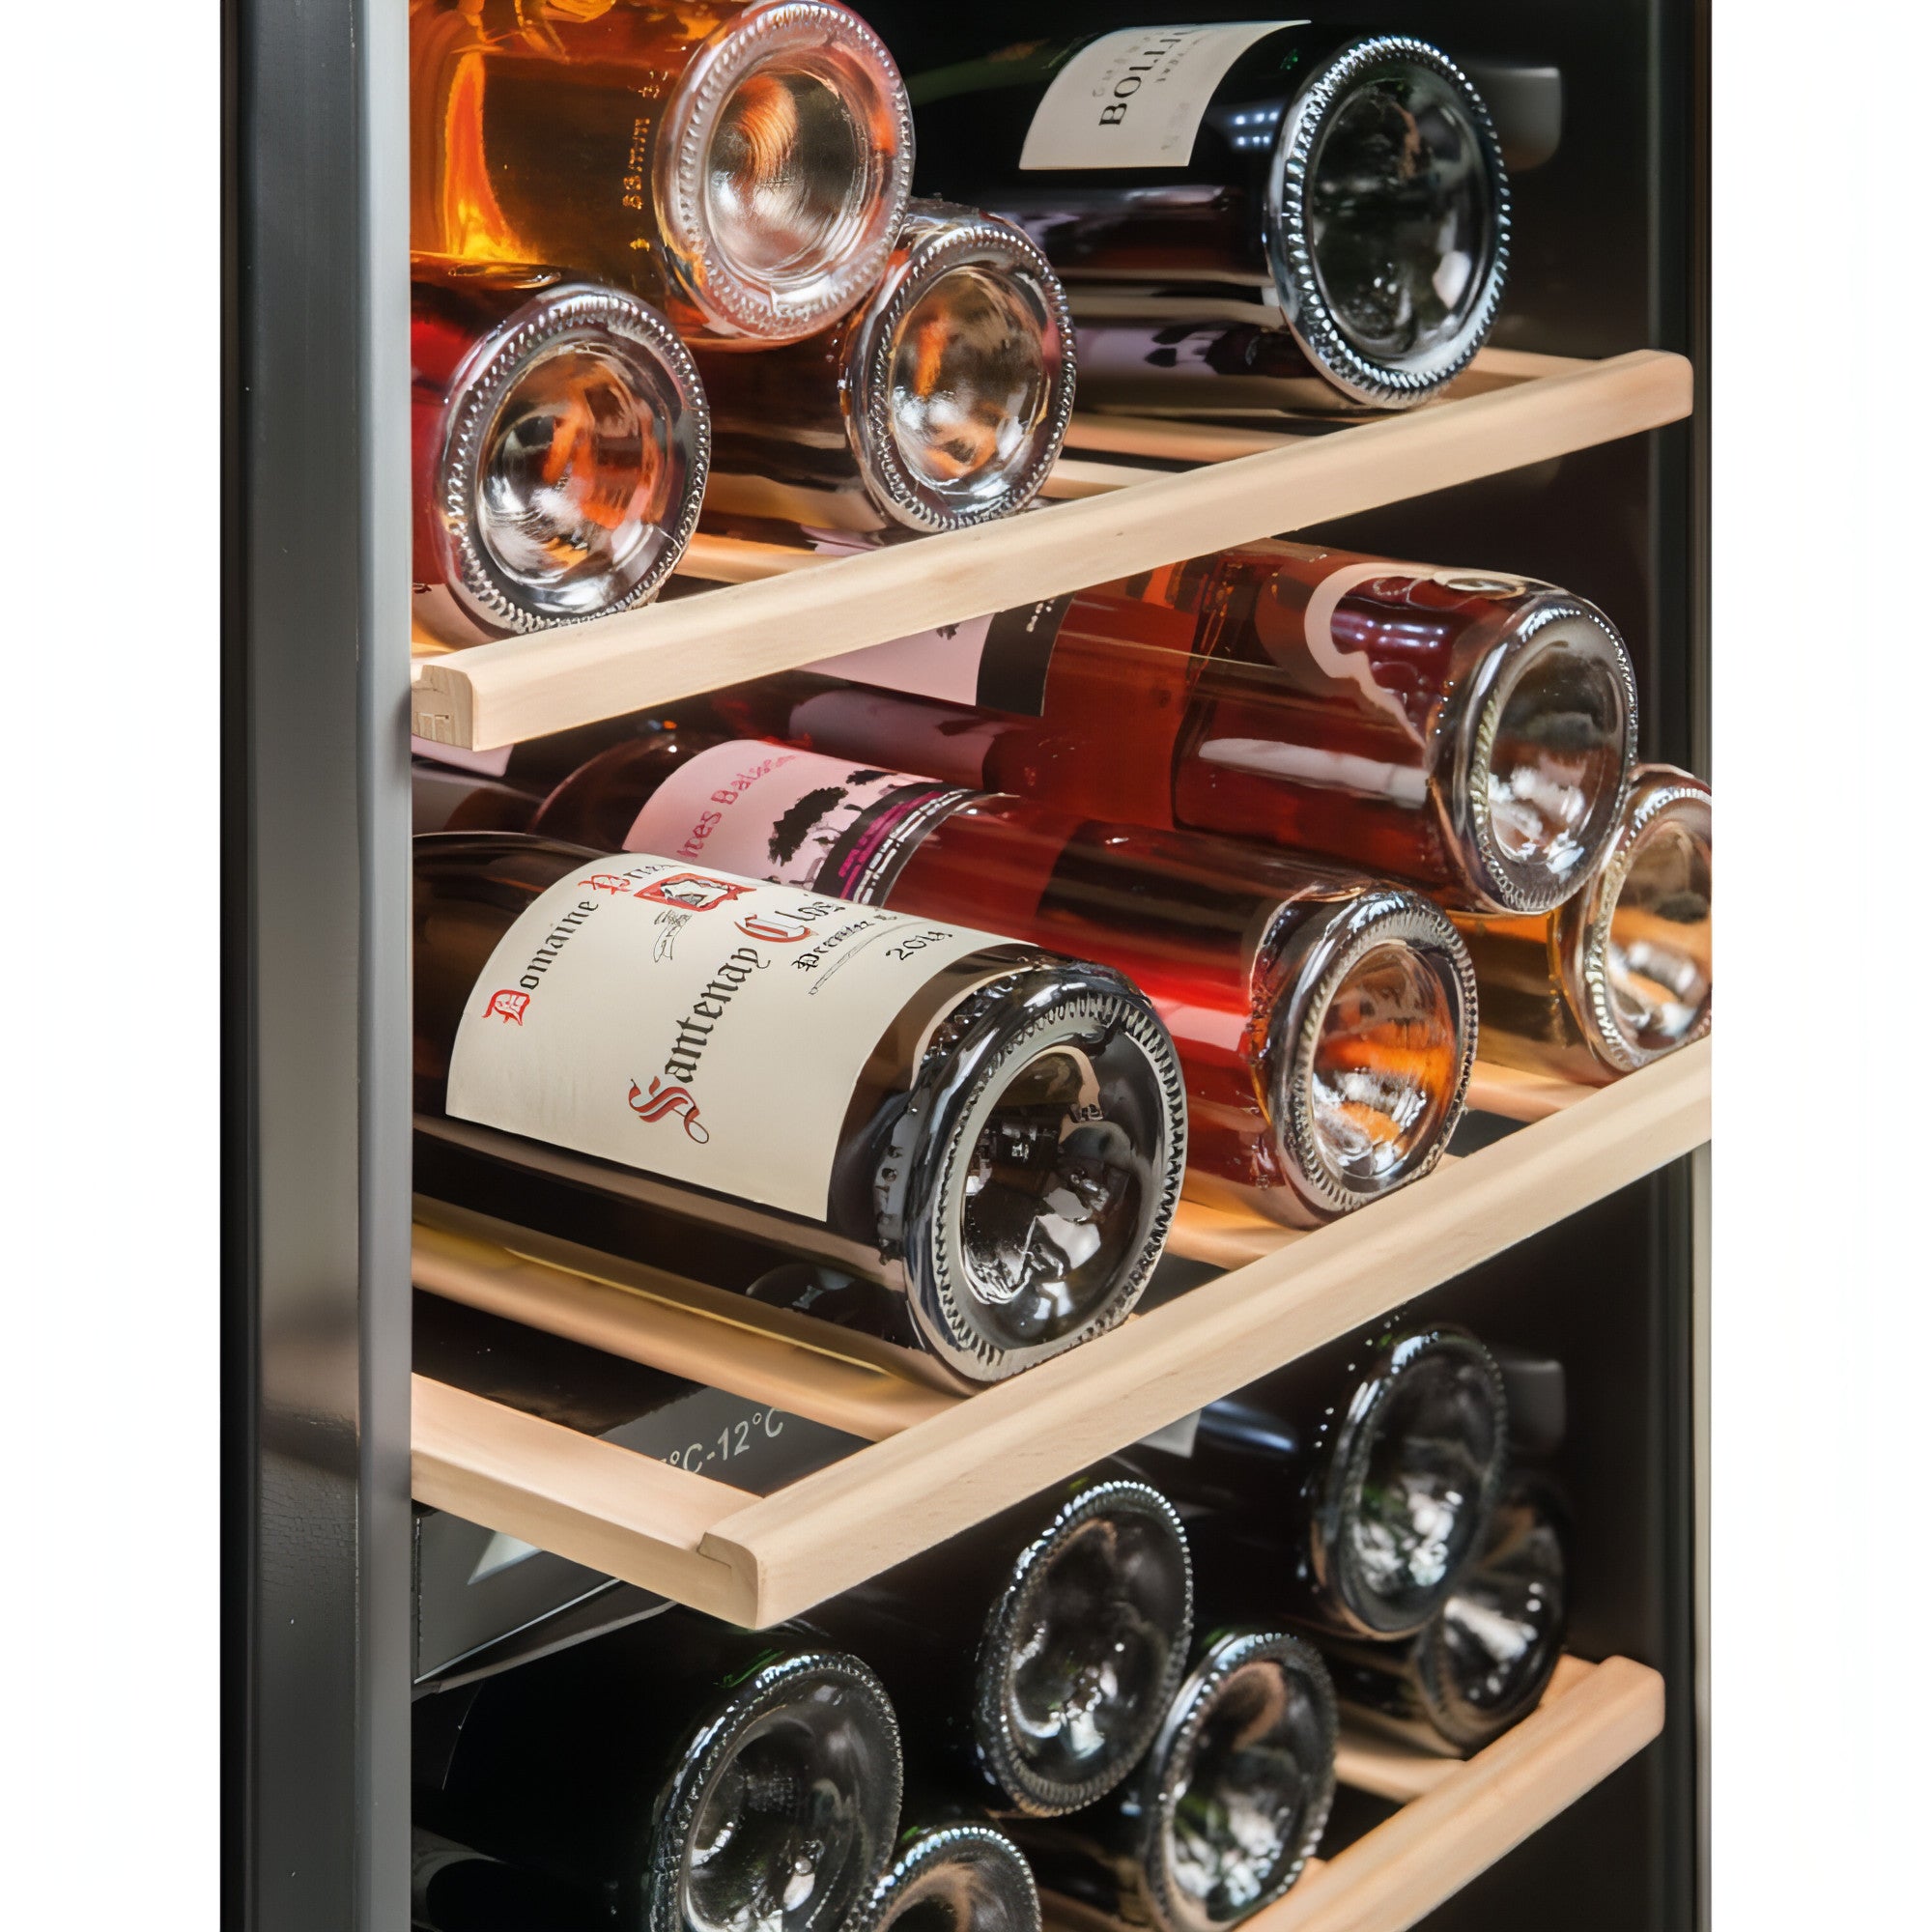 La Sommeliere - Dual Zone - 50 Bottle - Freestanding Wine Fridge - LS51.2ZBLACK